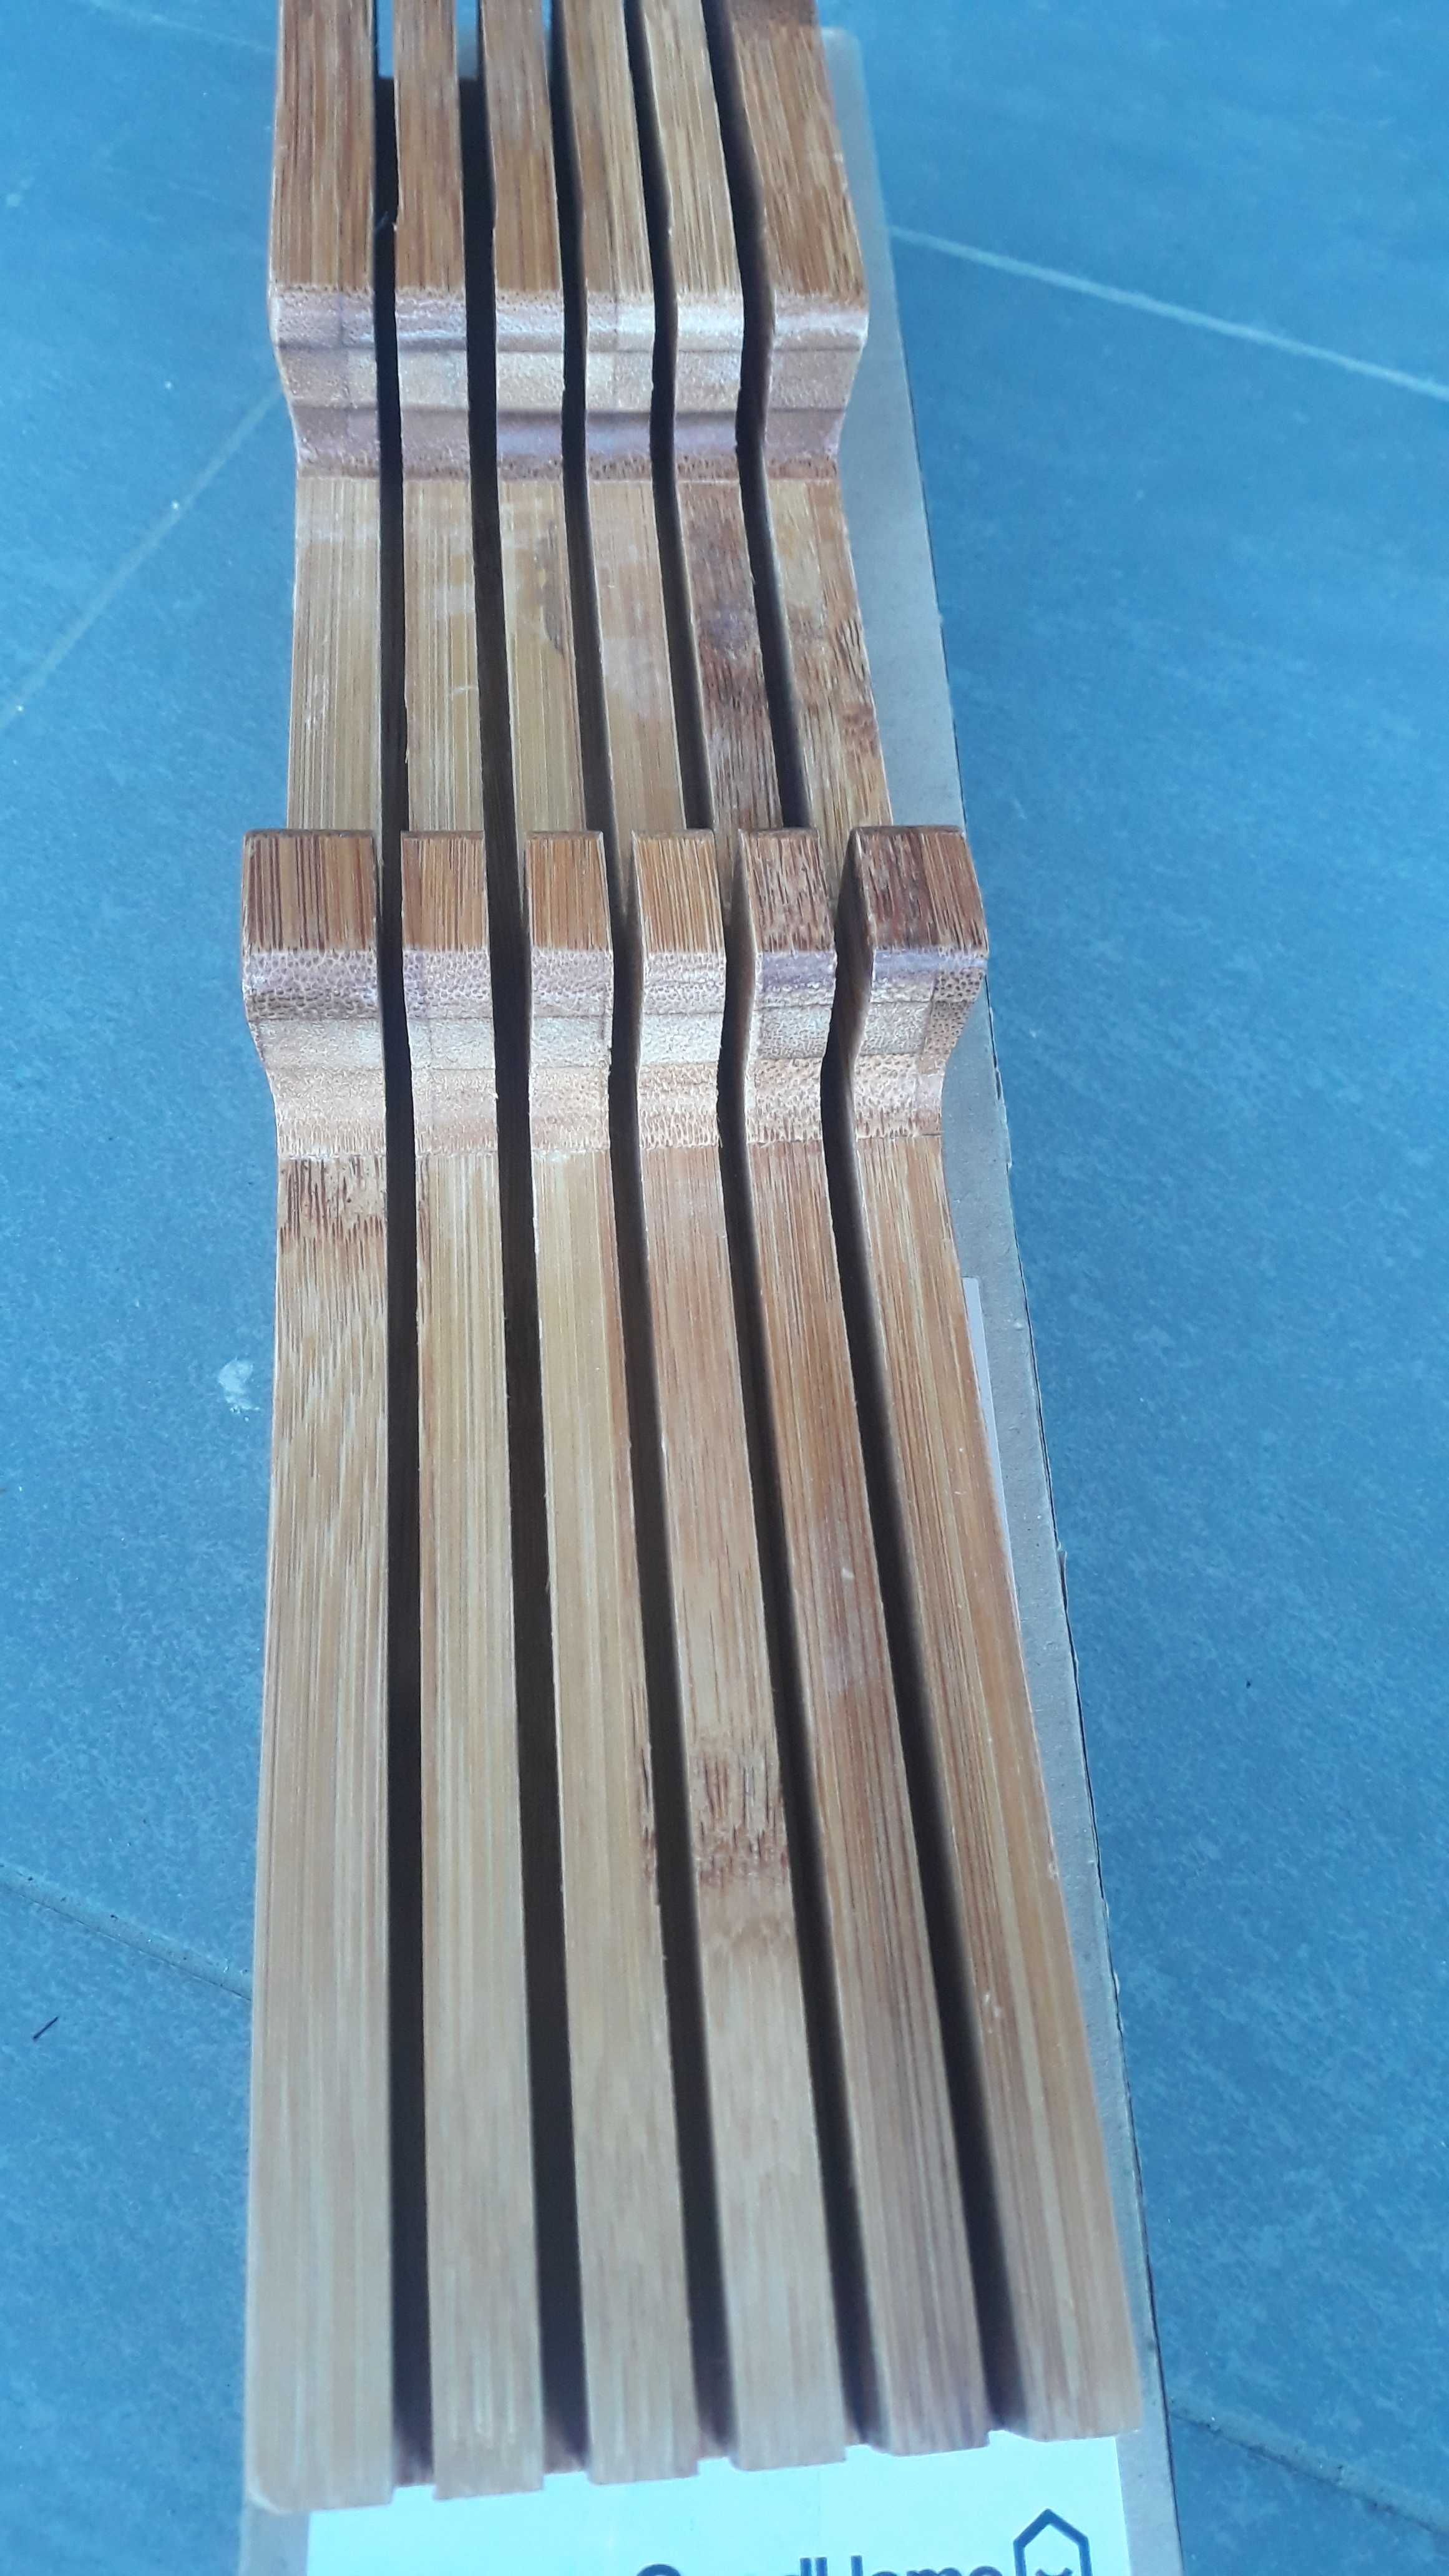 Stojak na noże kuchenne z drewna bambusowego